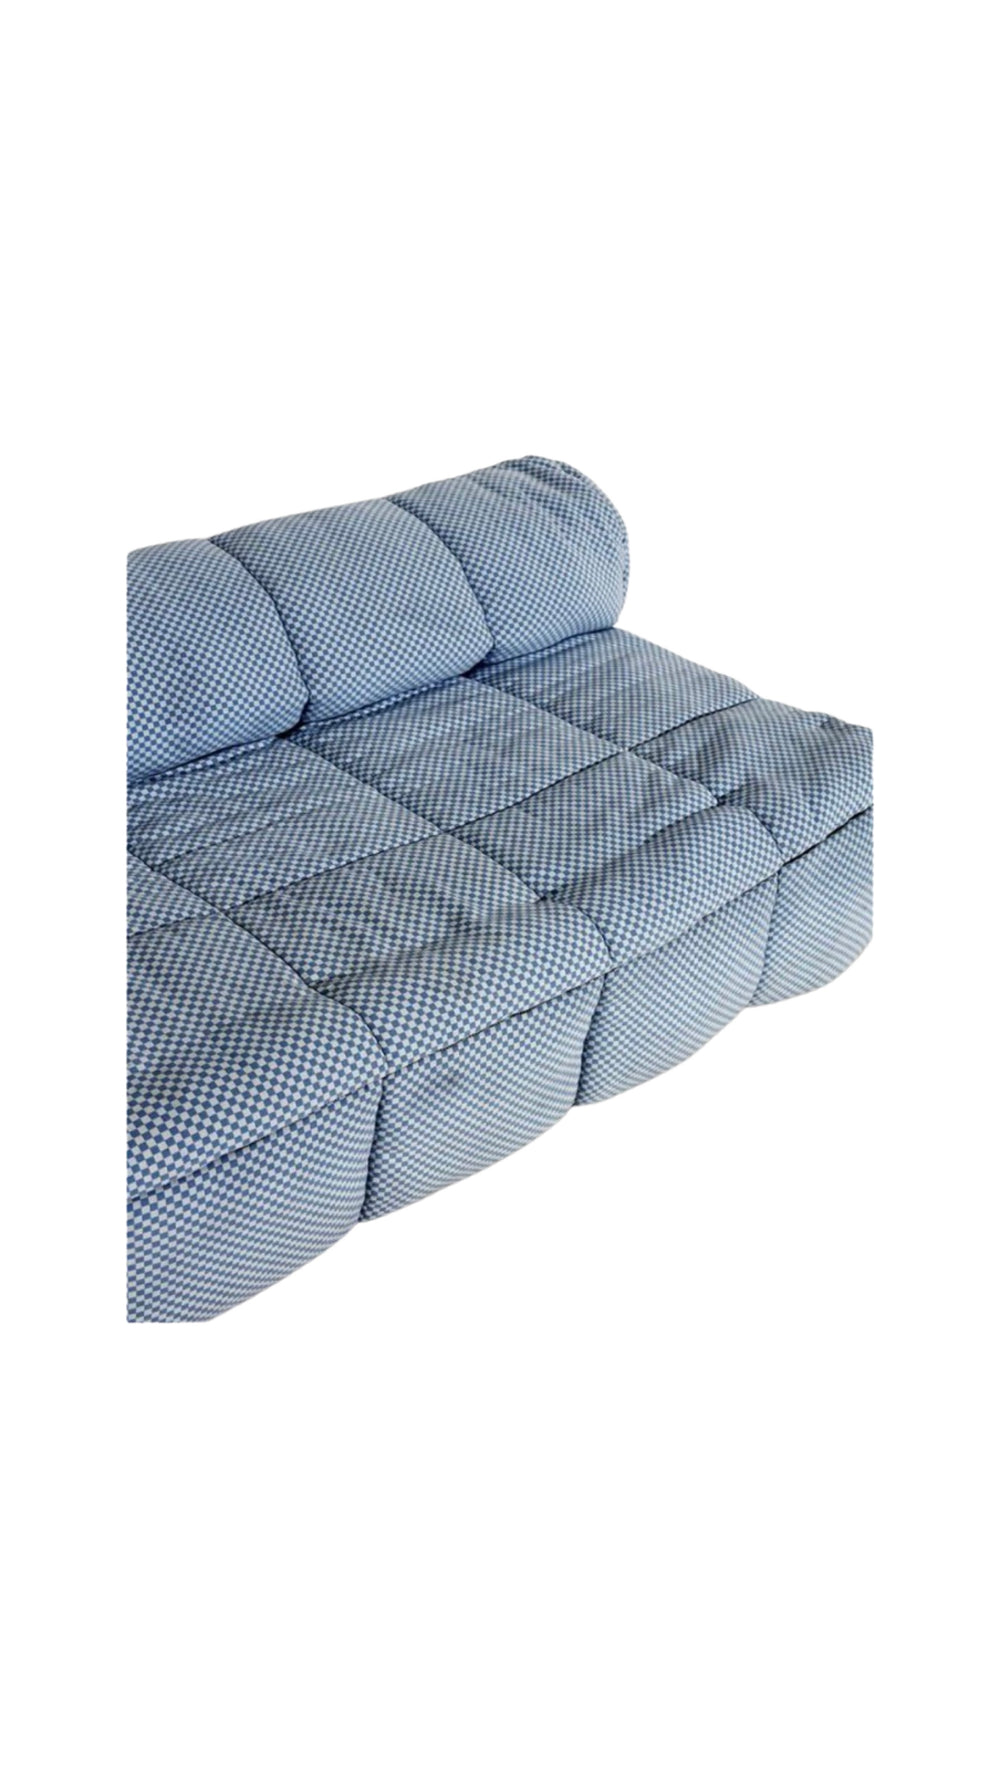 Cini Boeri "Strips" sofa in original checker fabric for Arflex, Italy, 1960s